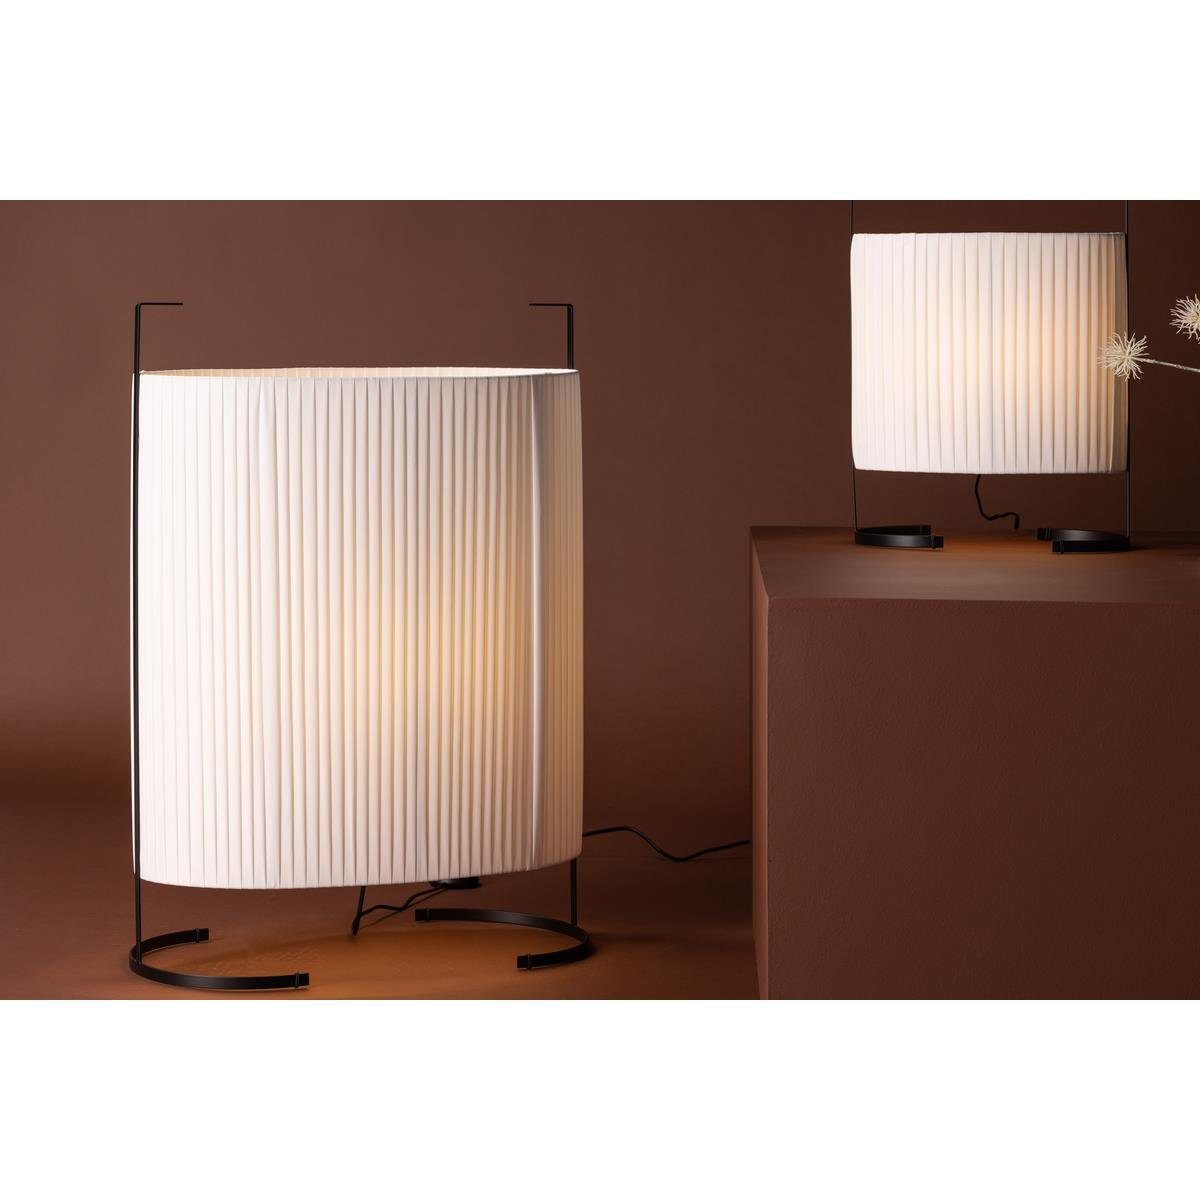 BOURGH Stehlampe Rennes - Große Lampe / Bodenlampe 80 cm hoch - modernes Design